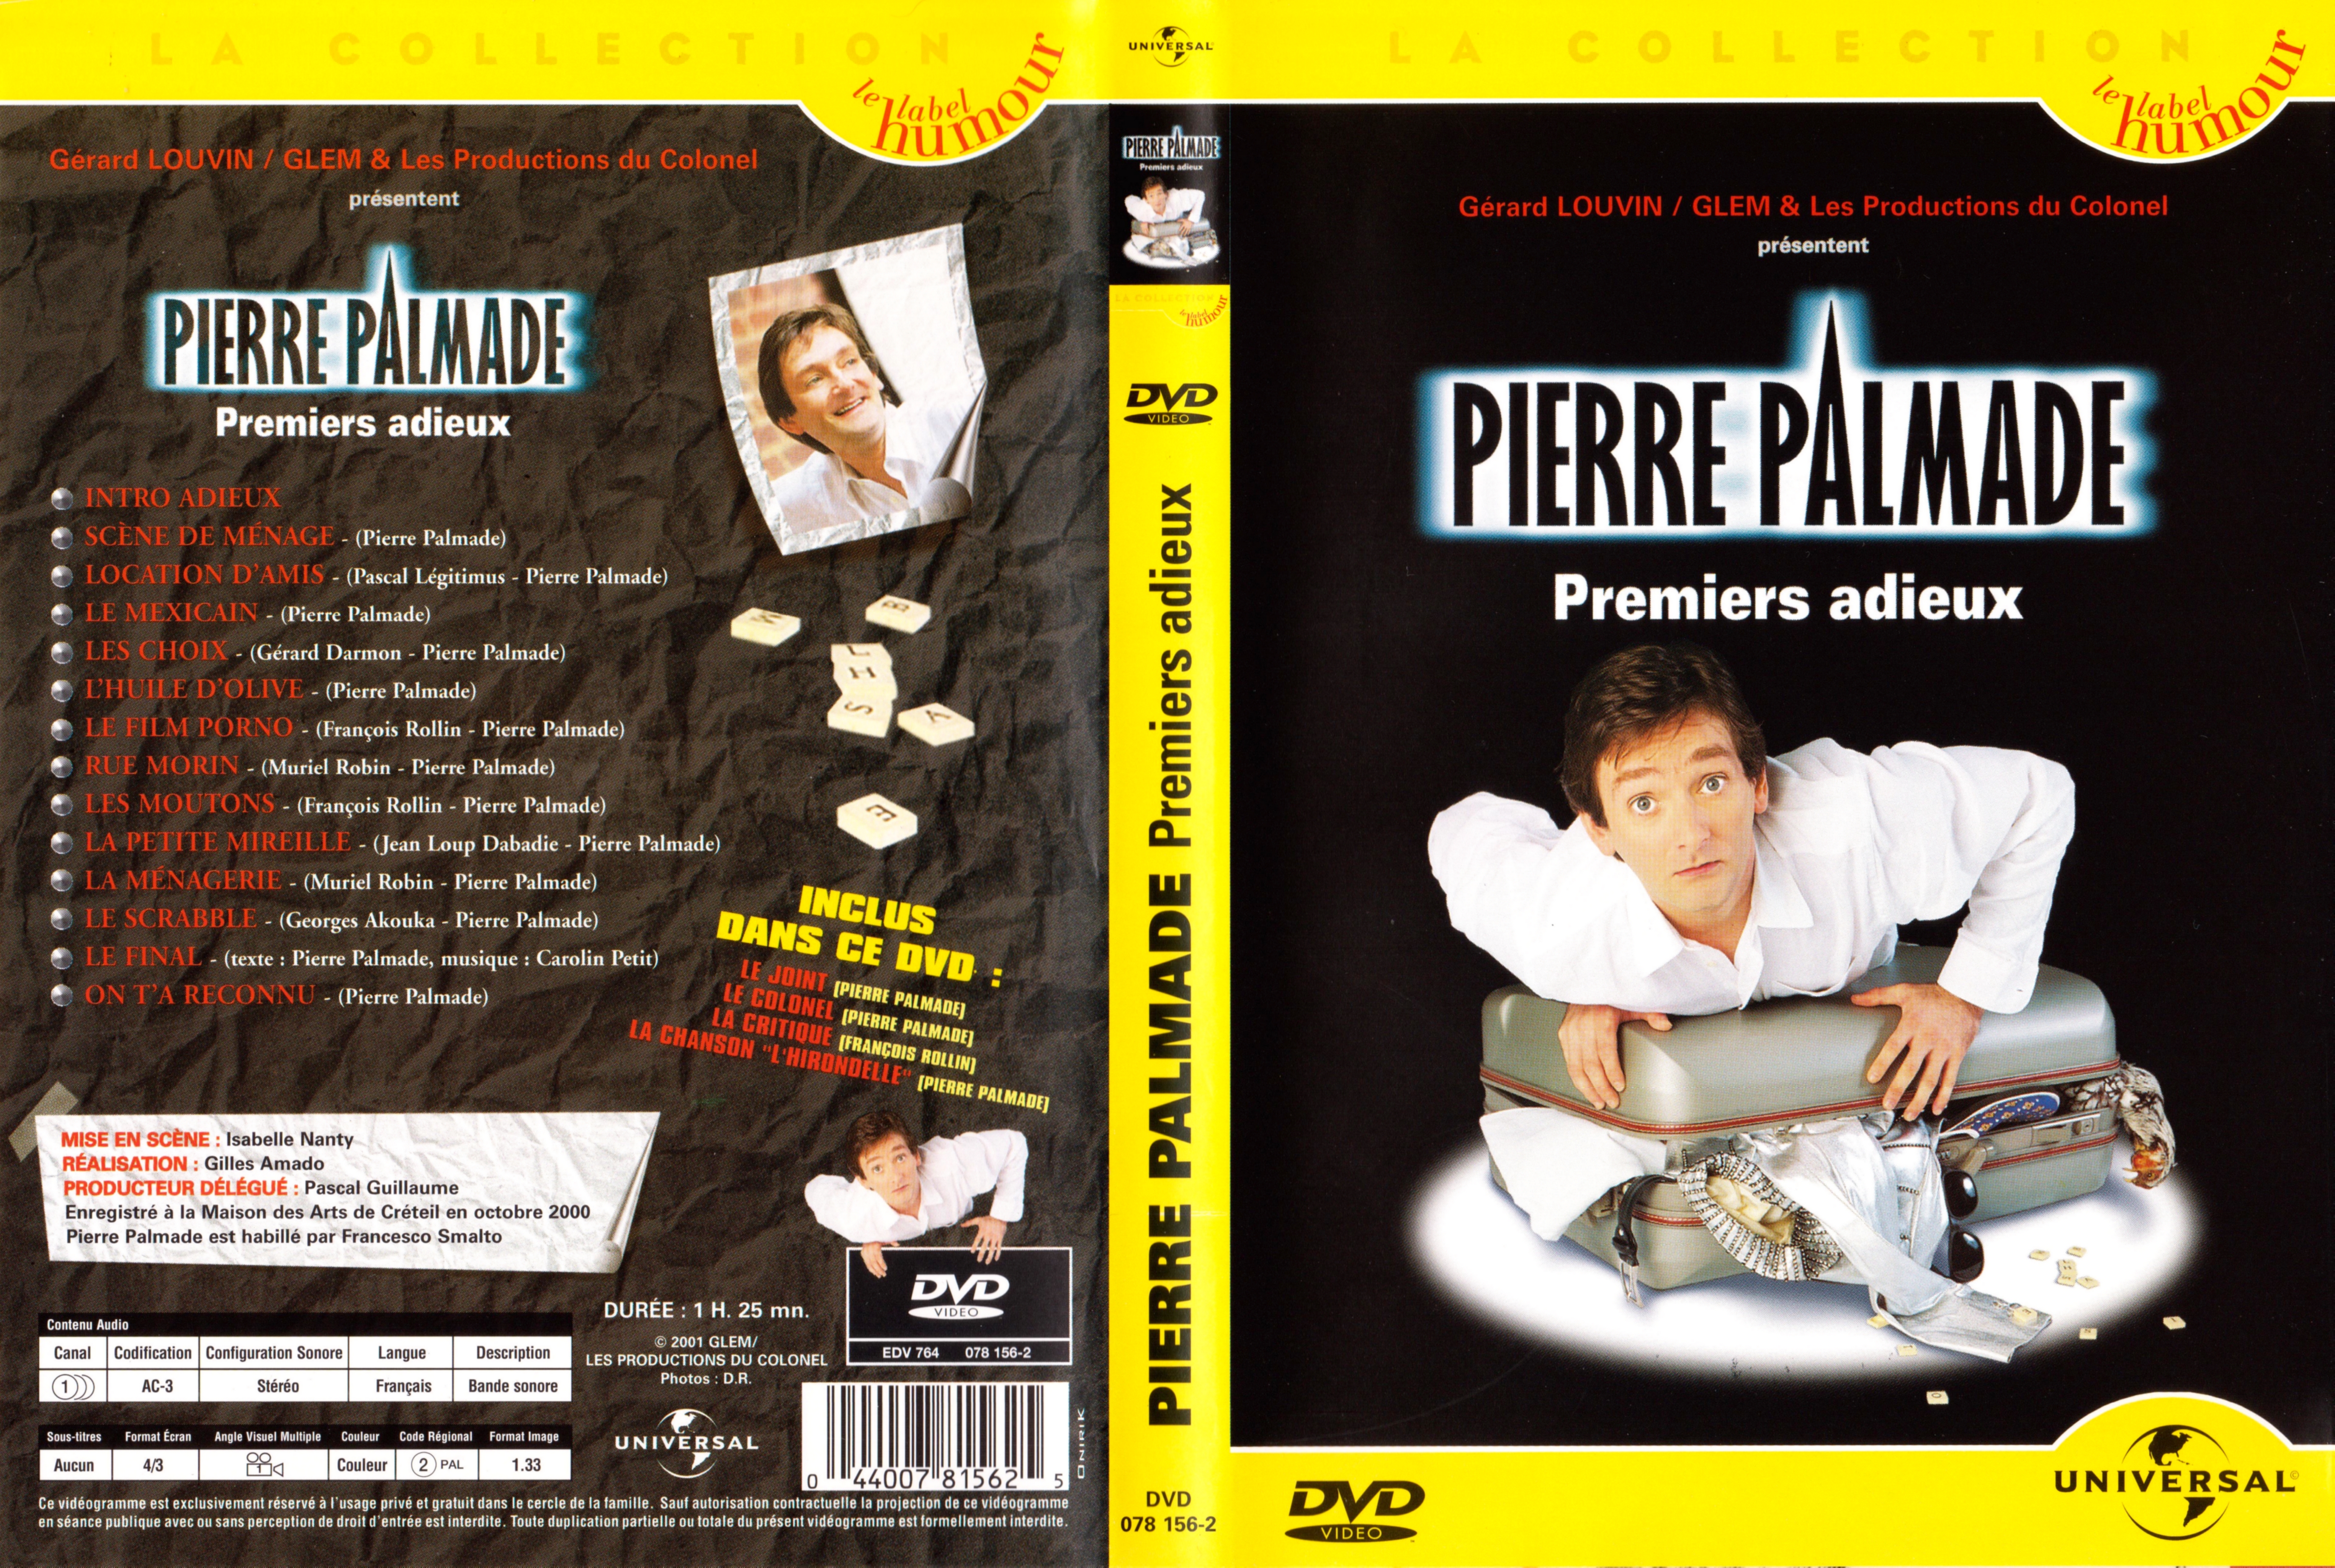 Jaquette DVD Pierre Palmade Premiers adieux v2